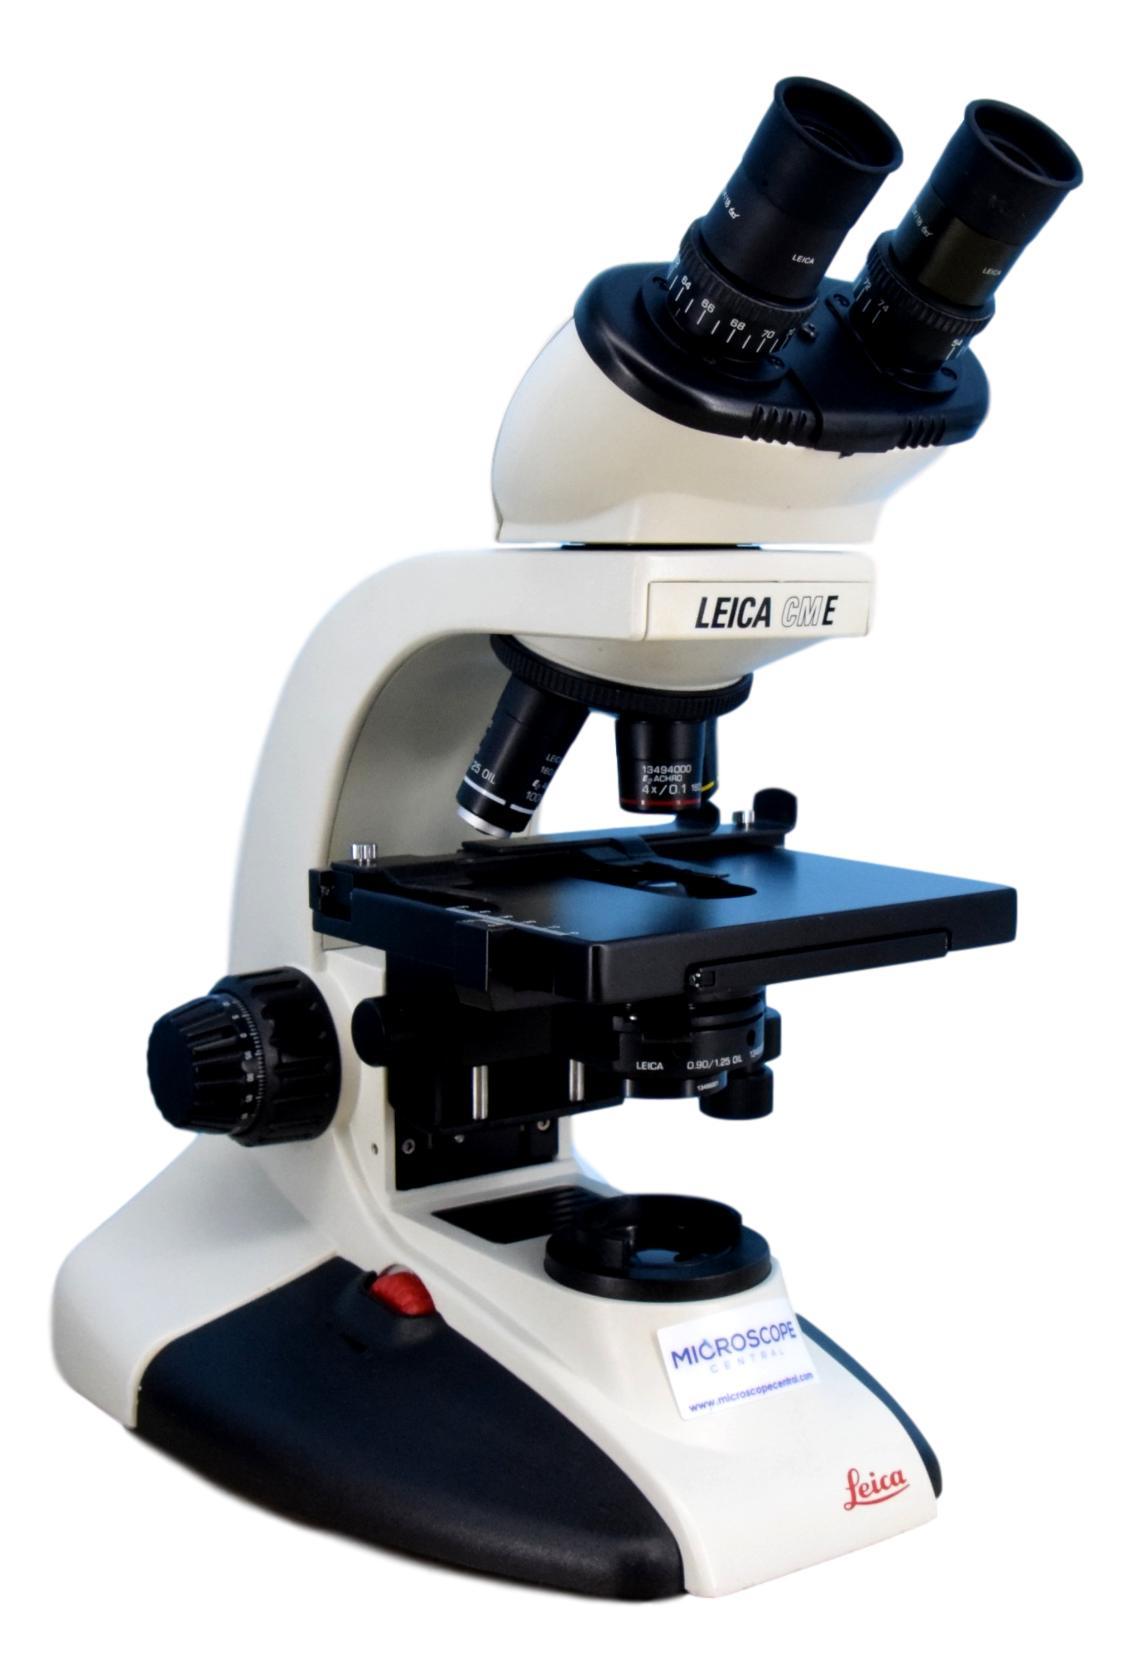 CME Microscope | 4x, 10x, 100x Oil Objectives – Microscope